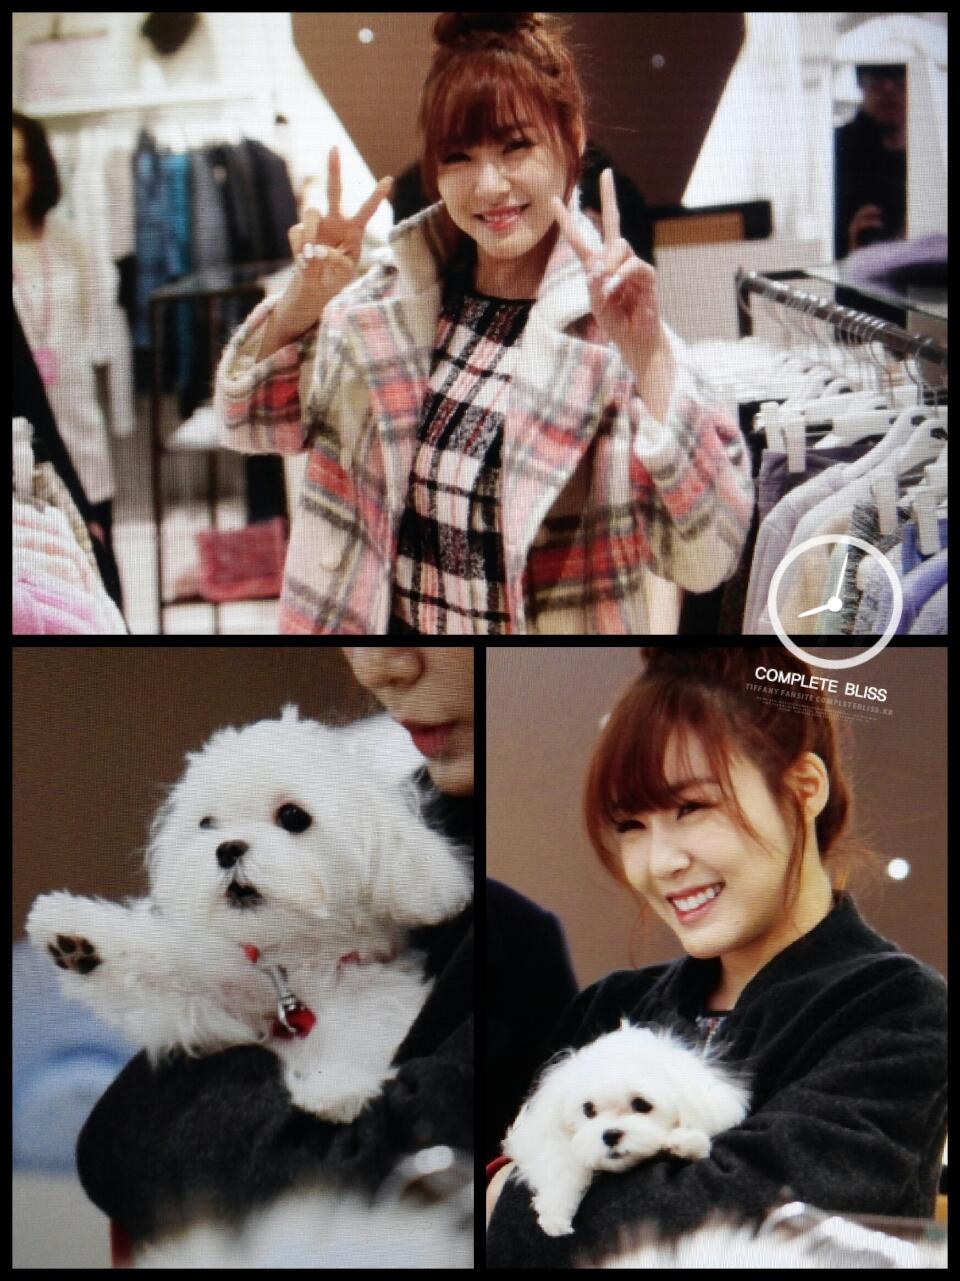 [PIC][28-11-2013]Tiffany ghé thăm cửa hàng "QUA" ở Hyundai Department Store vào trưa nay - Page 2 BaJCRZFCMAAKeOS